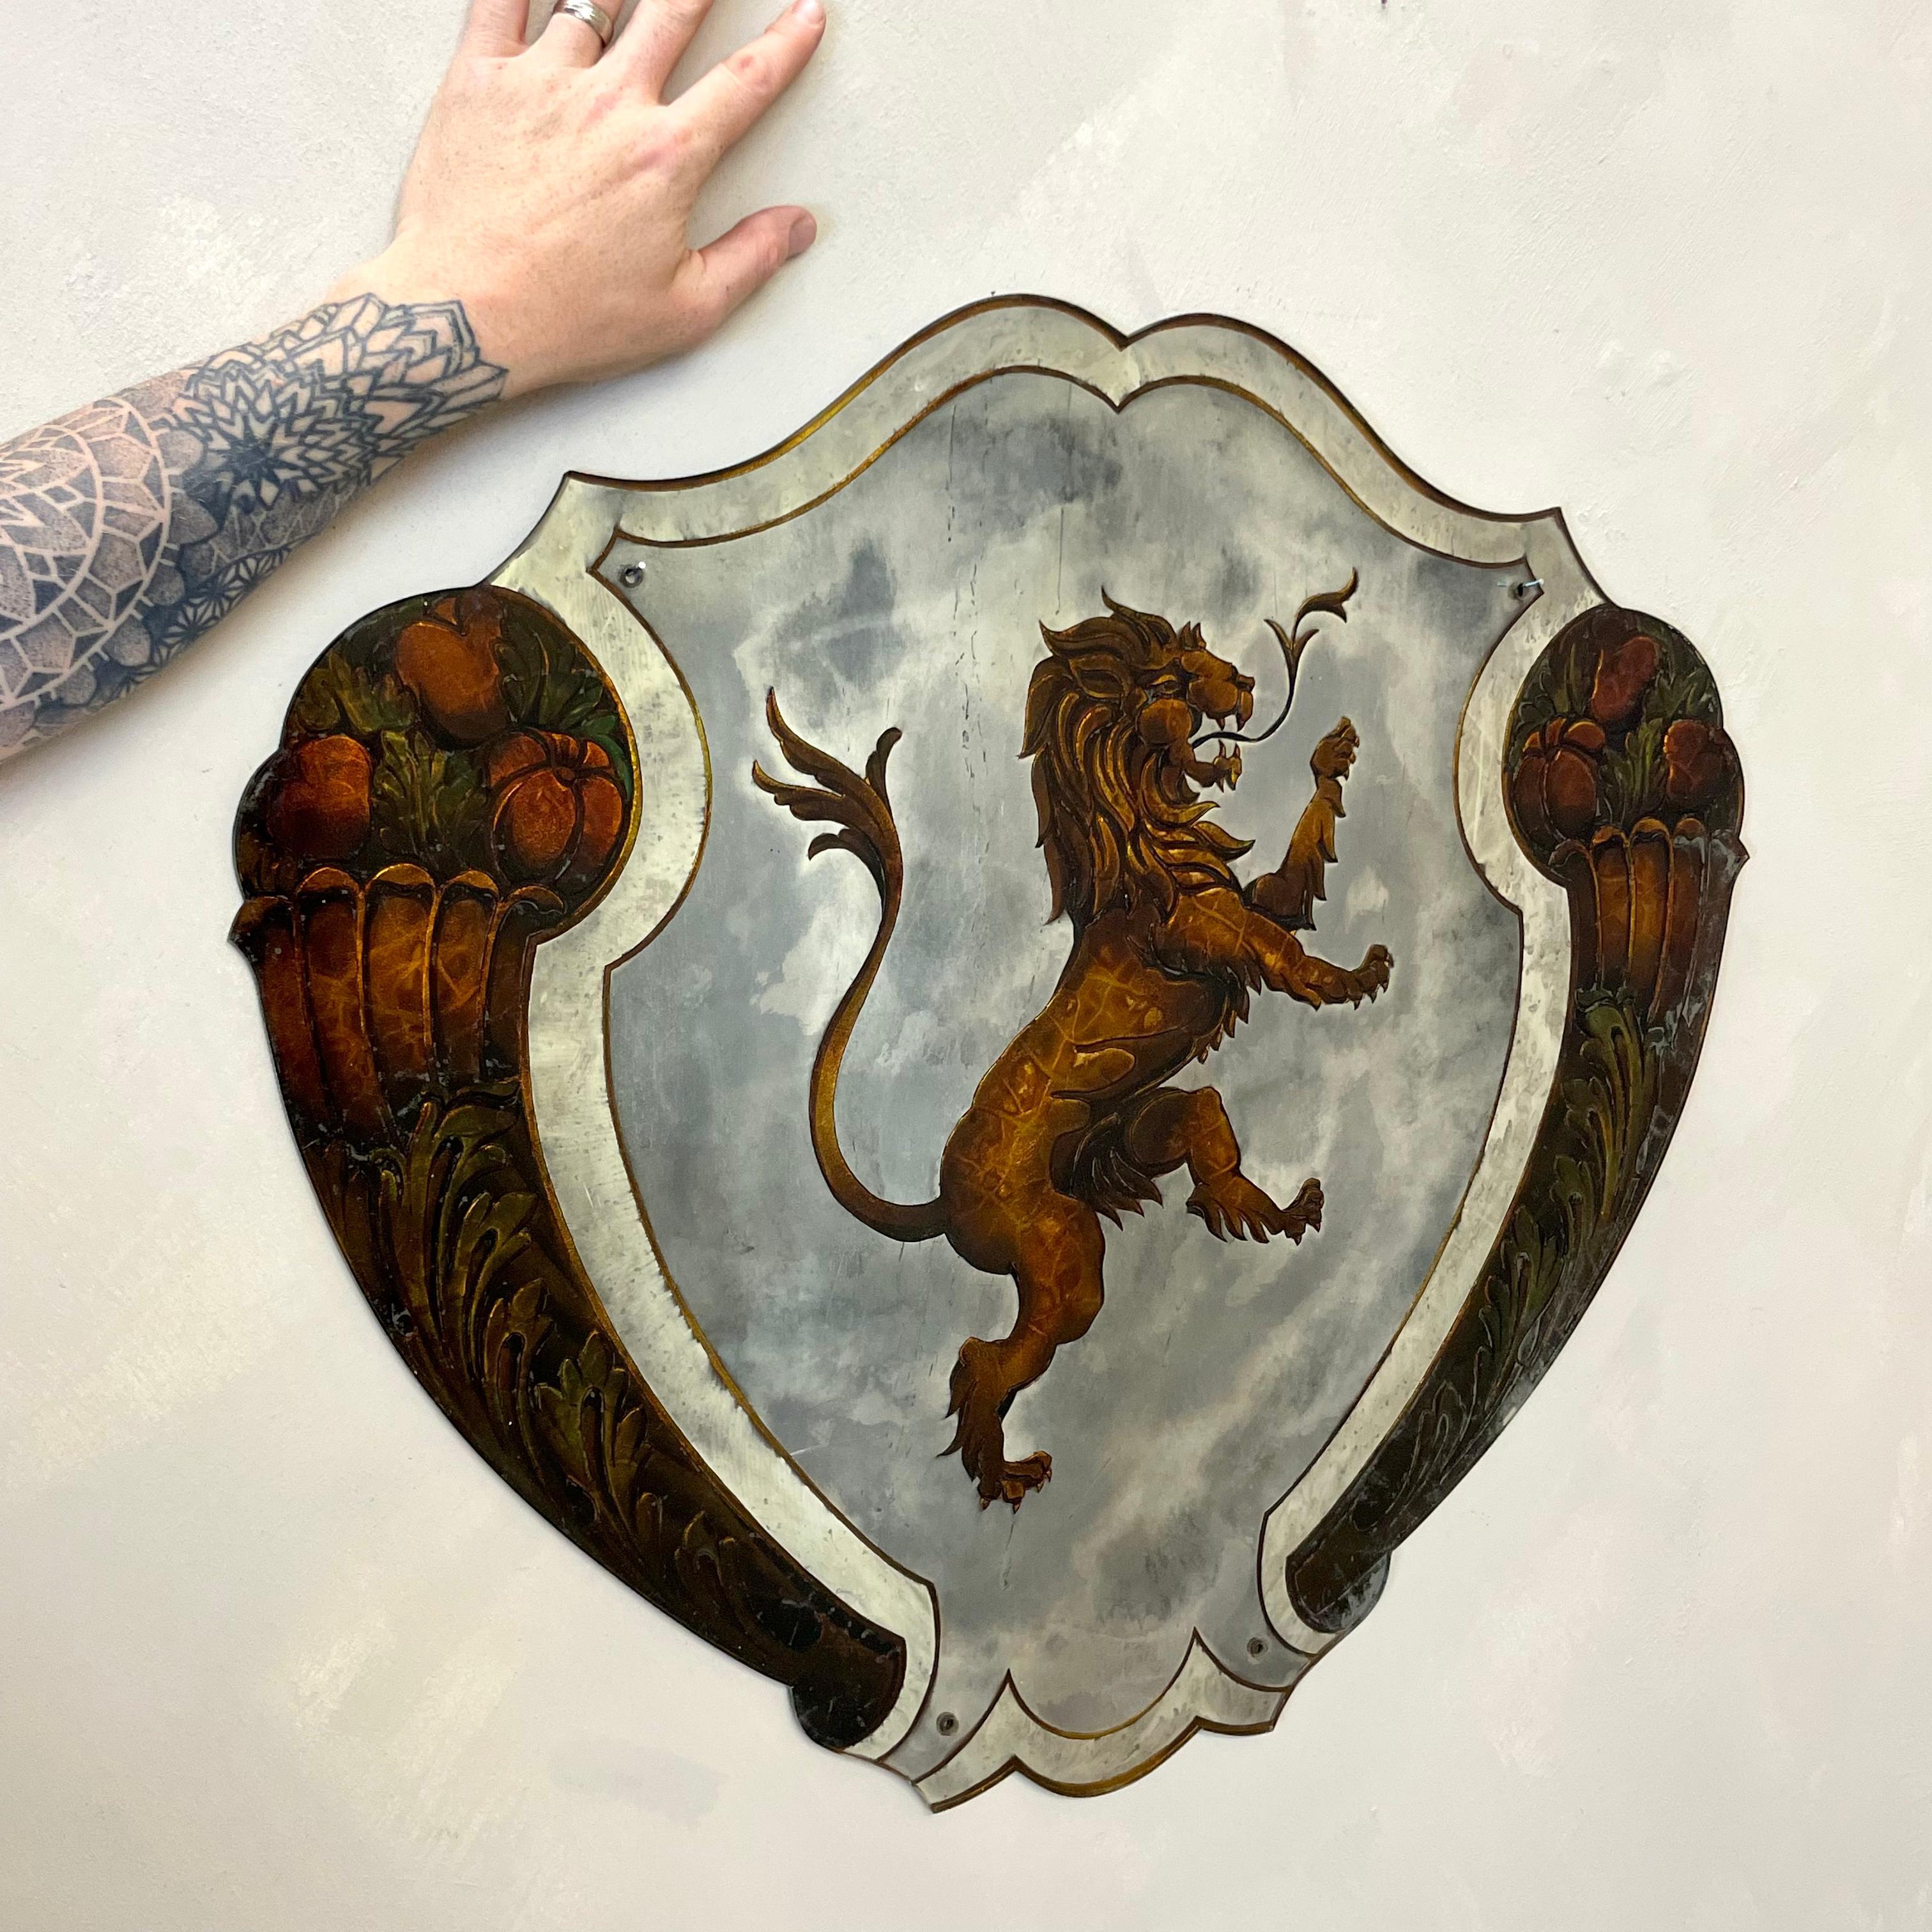 Ein seltener französischer Verre Eglomisé-Spiegel, der einen heraldischen Löwen mit detailliertem Blatt- und Blumendekor aus Kupfer und Gold darstellt.
Der Spiegel selbst ist natürlich stockfleckig und sieht von beiden Seiten sehr geräuchert aus.